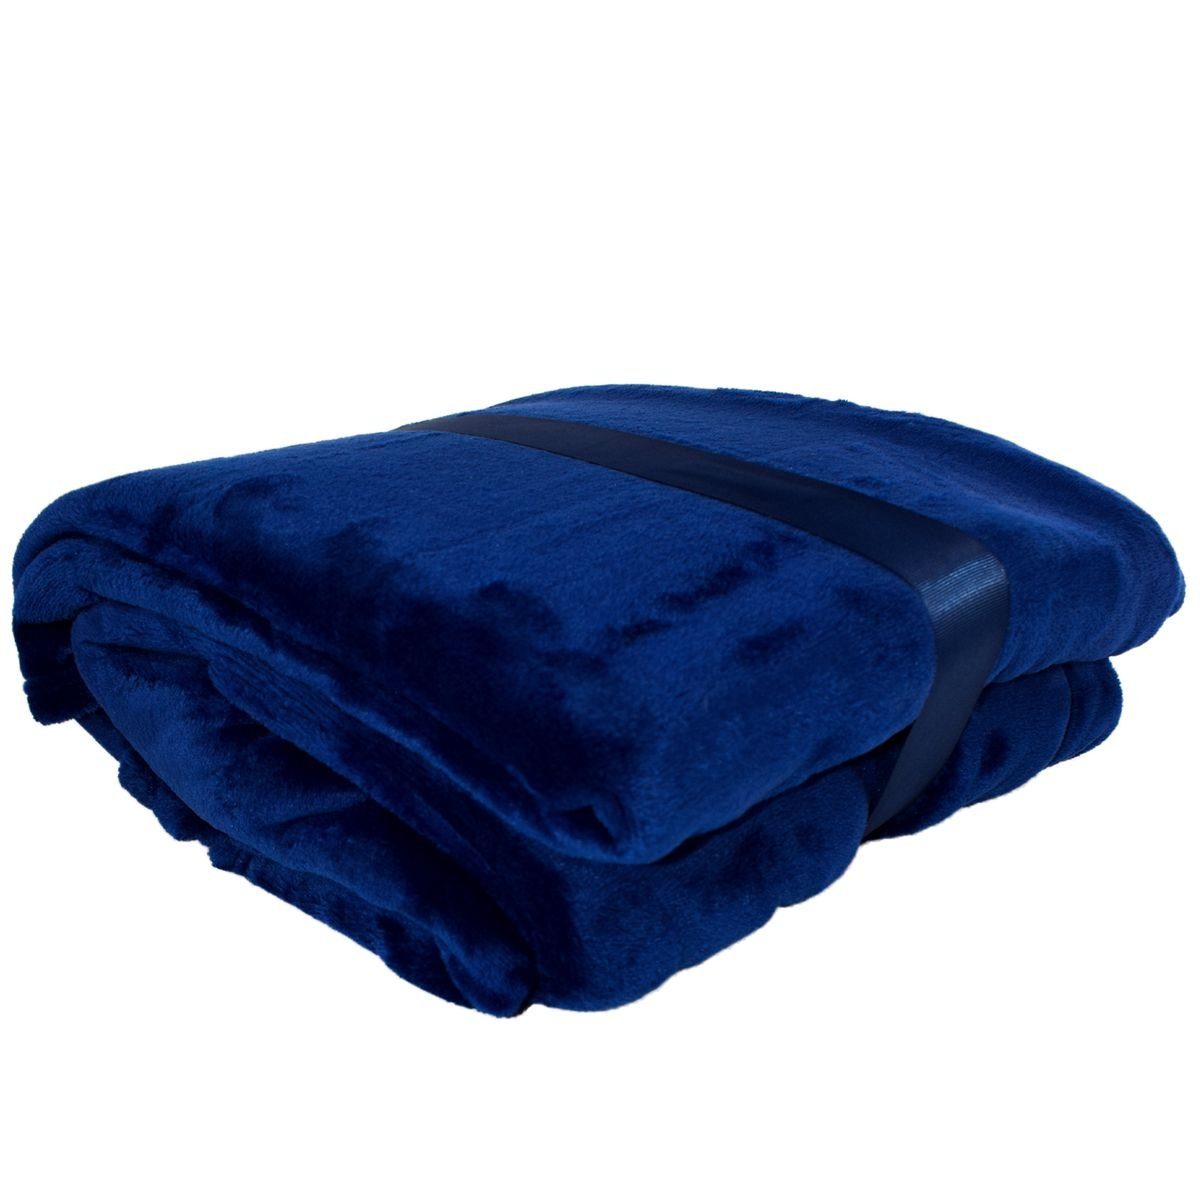 Wohndecke Flanell Couchdecke 145x195cm mit Ärmeln und Tasche Kuscheldecke, Marabellas Shop, in verschiedenen Farben Blau